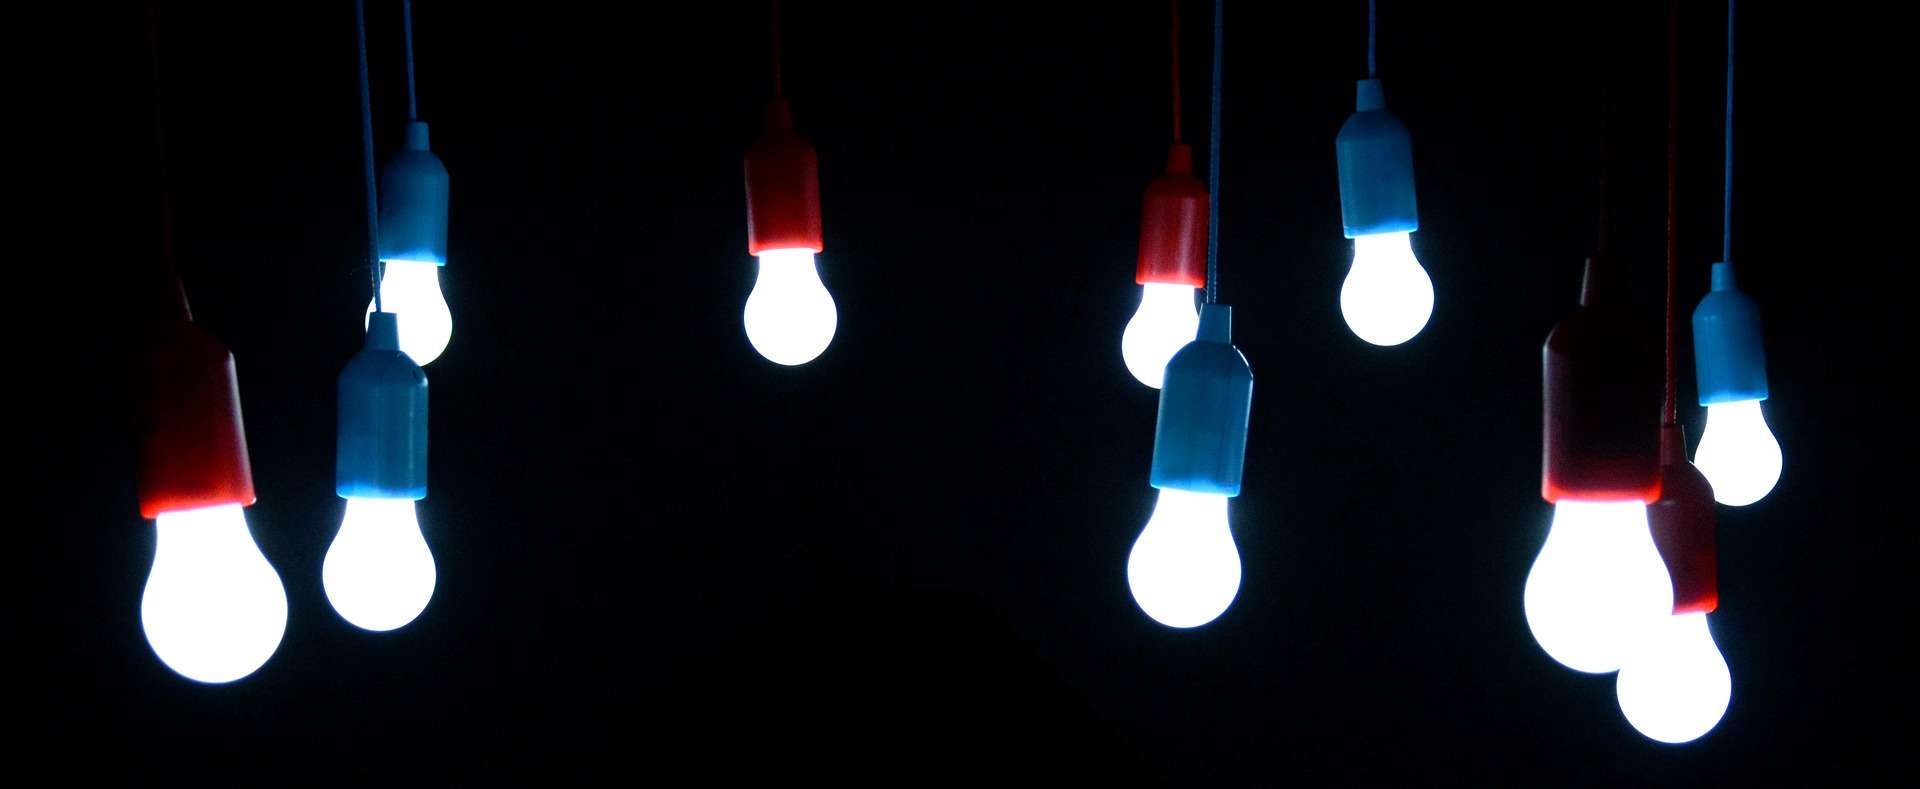 LED light trends